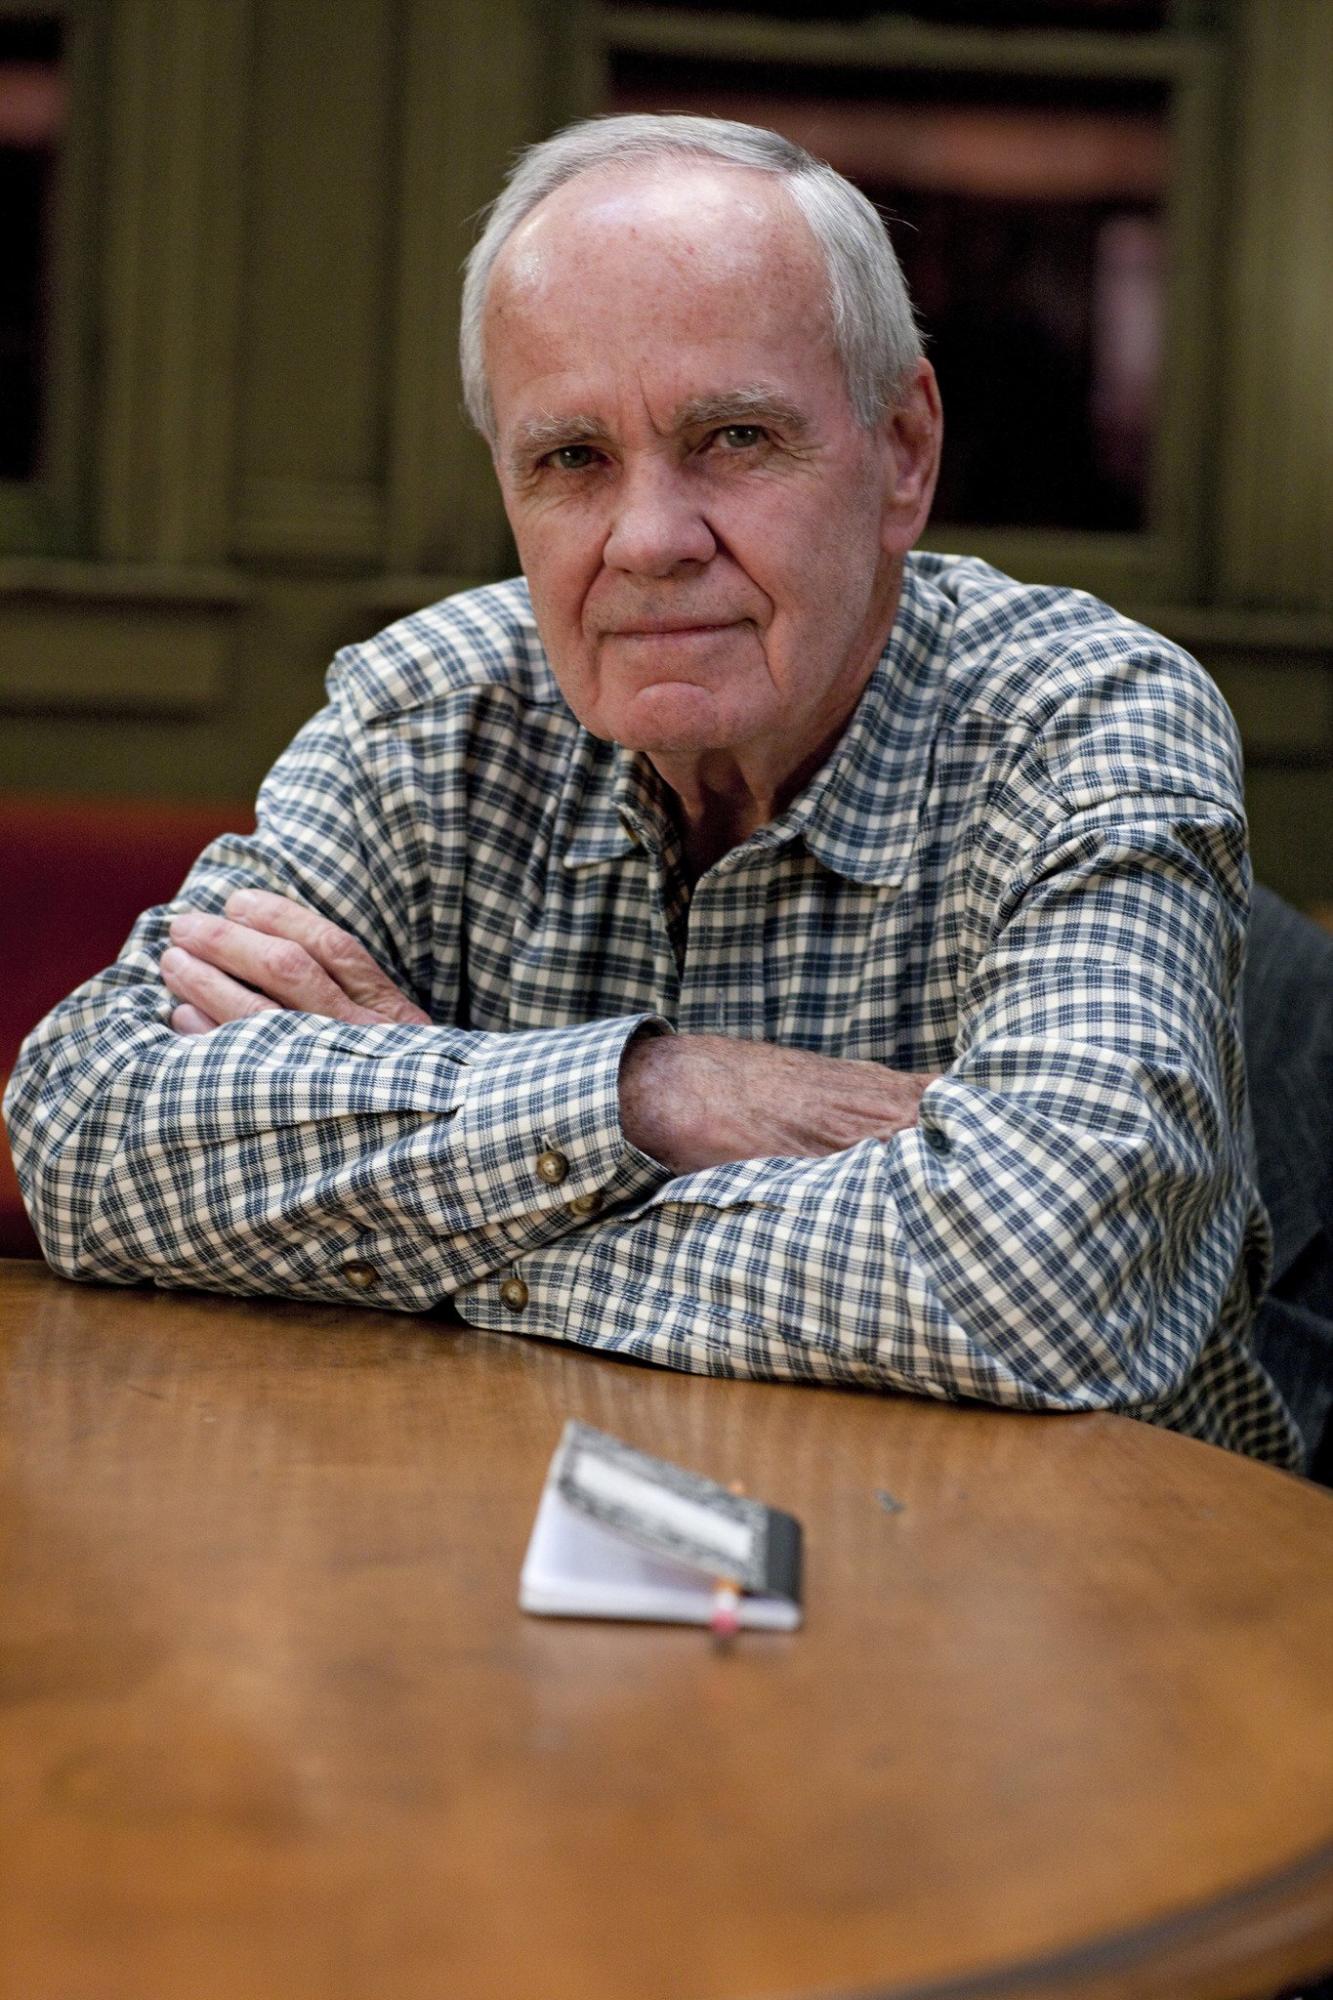 $!McCarthy recibió el premio Pulitzer de ficción en 2007 por The Road.